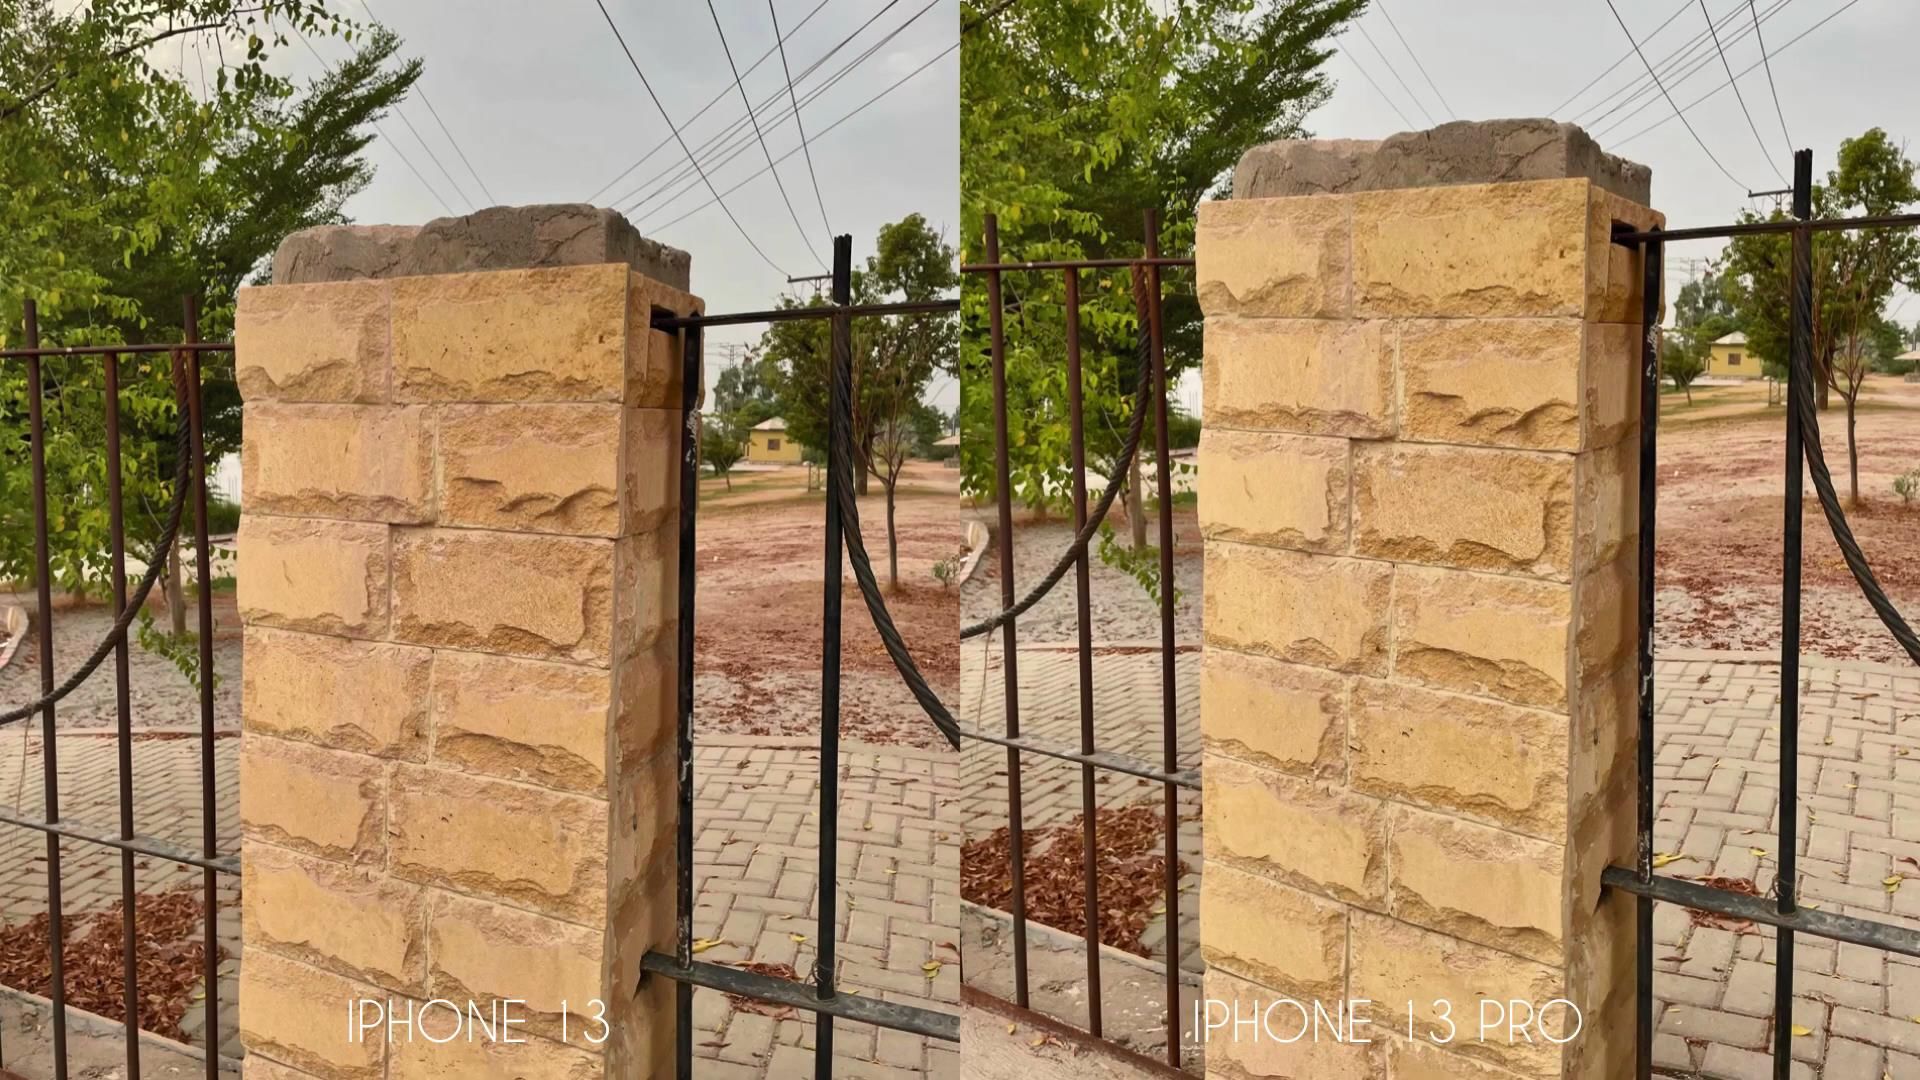 近景处|iPhone13Pro和iPhone13拍照对比：3镜头和2镜头效果差距真大